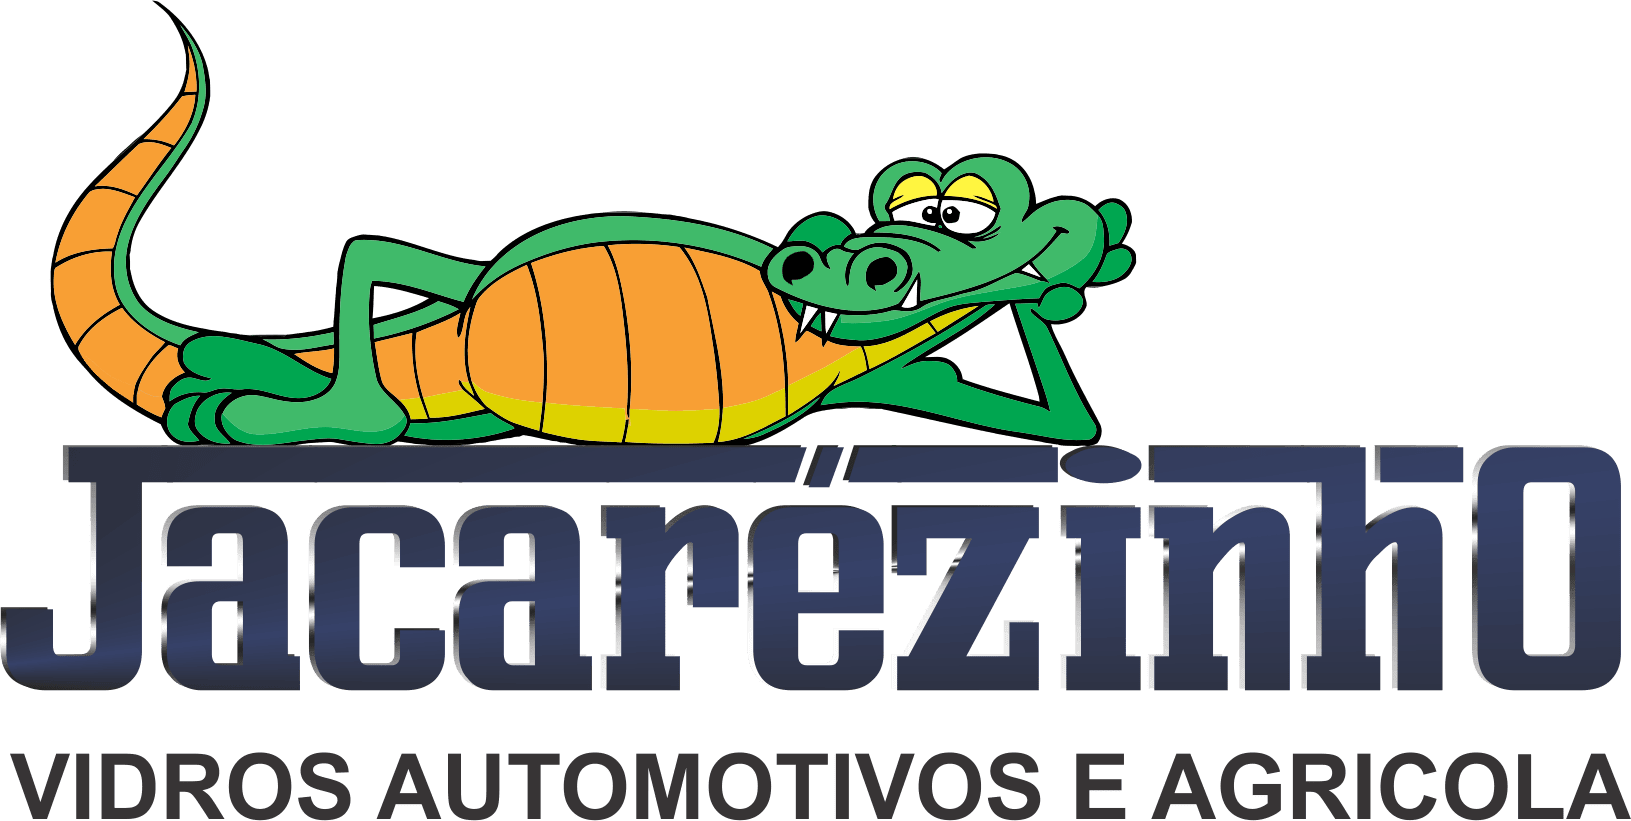 Jacarezinho Vidros Automotivos e Agricola